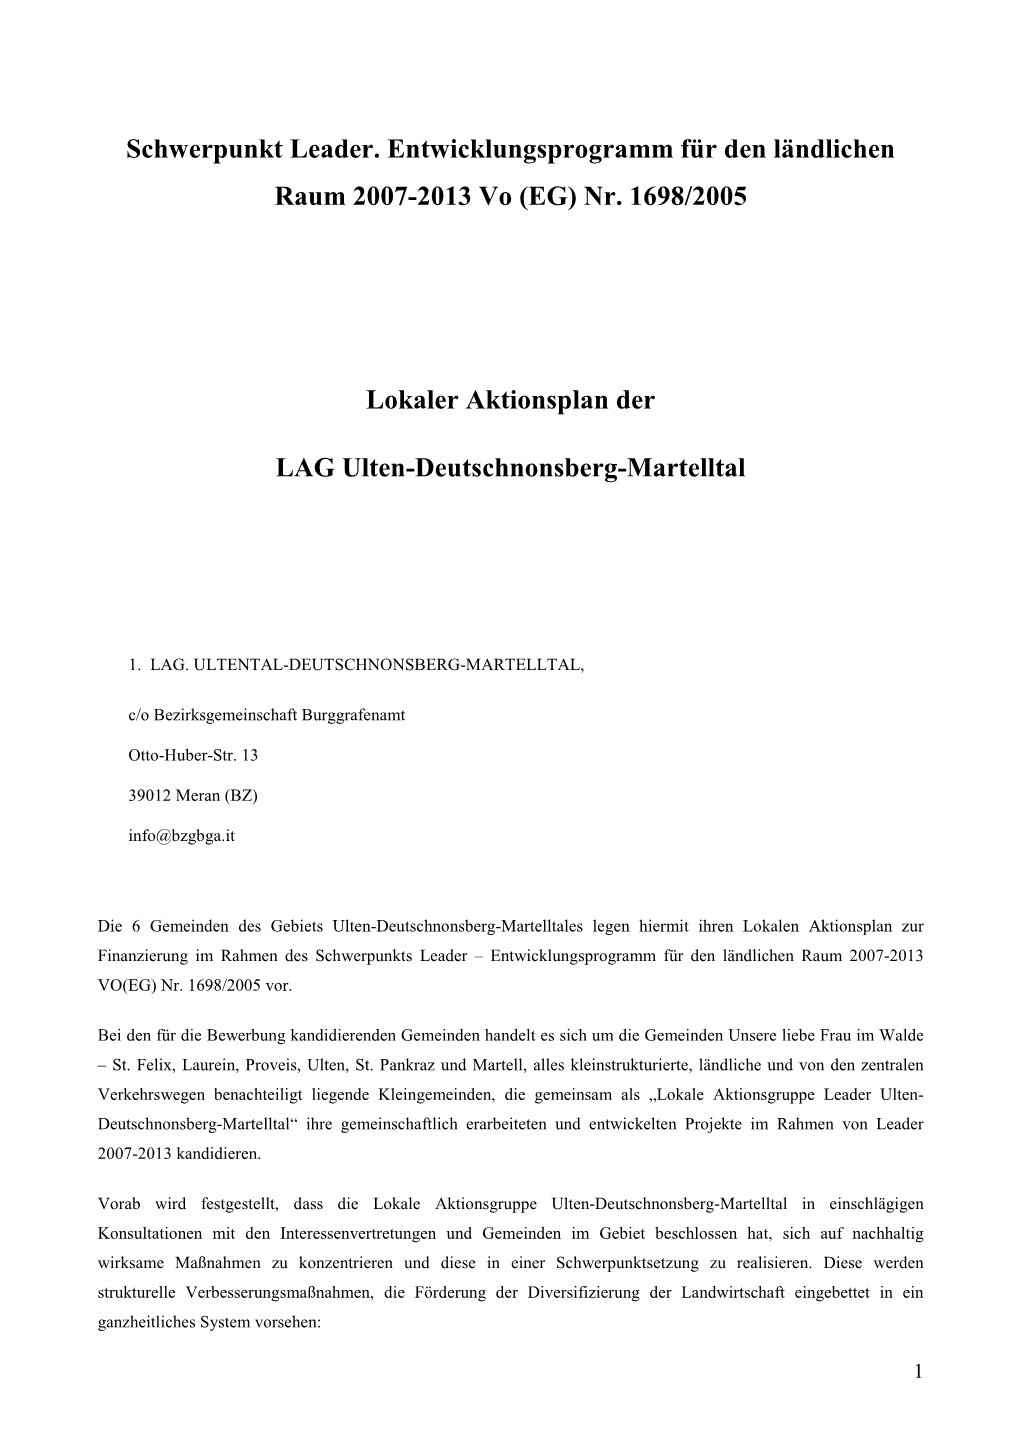 Lokaler Aktionsplan Ultental-Deutschnonsberg-Martell V 06 …